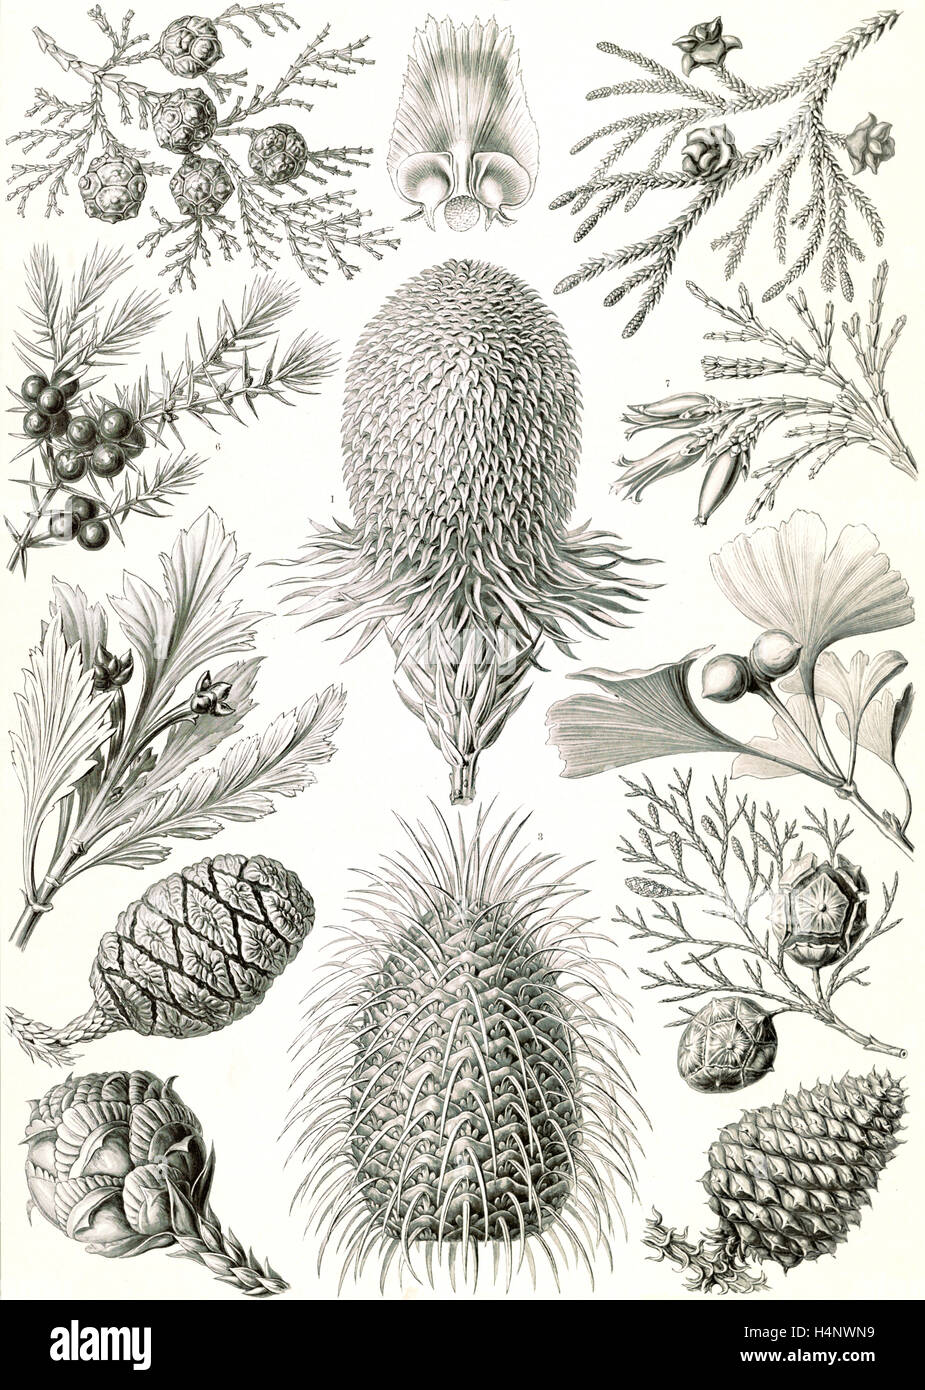 La figura mostra le conifere. Coniferae. - Bapfenbäume, 1 stampa : photomechanical ; foglio 36 x 26 cm., 1904. Ernst Haeckel Foto Stock